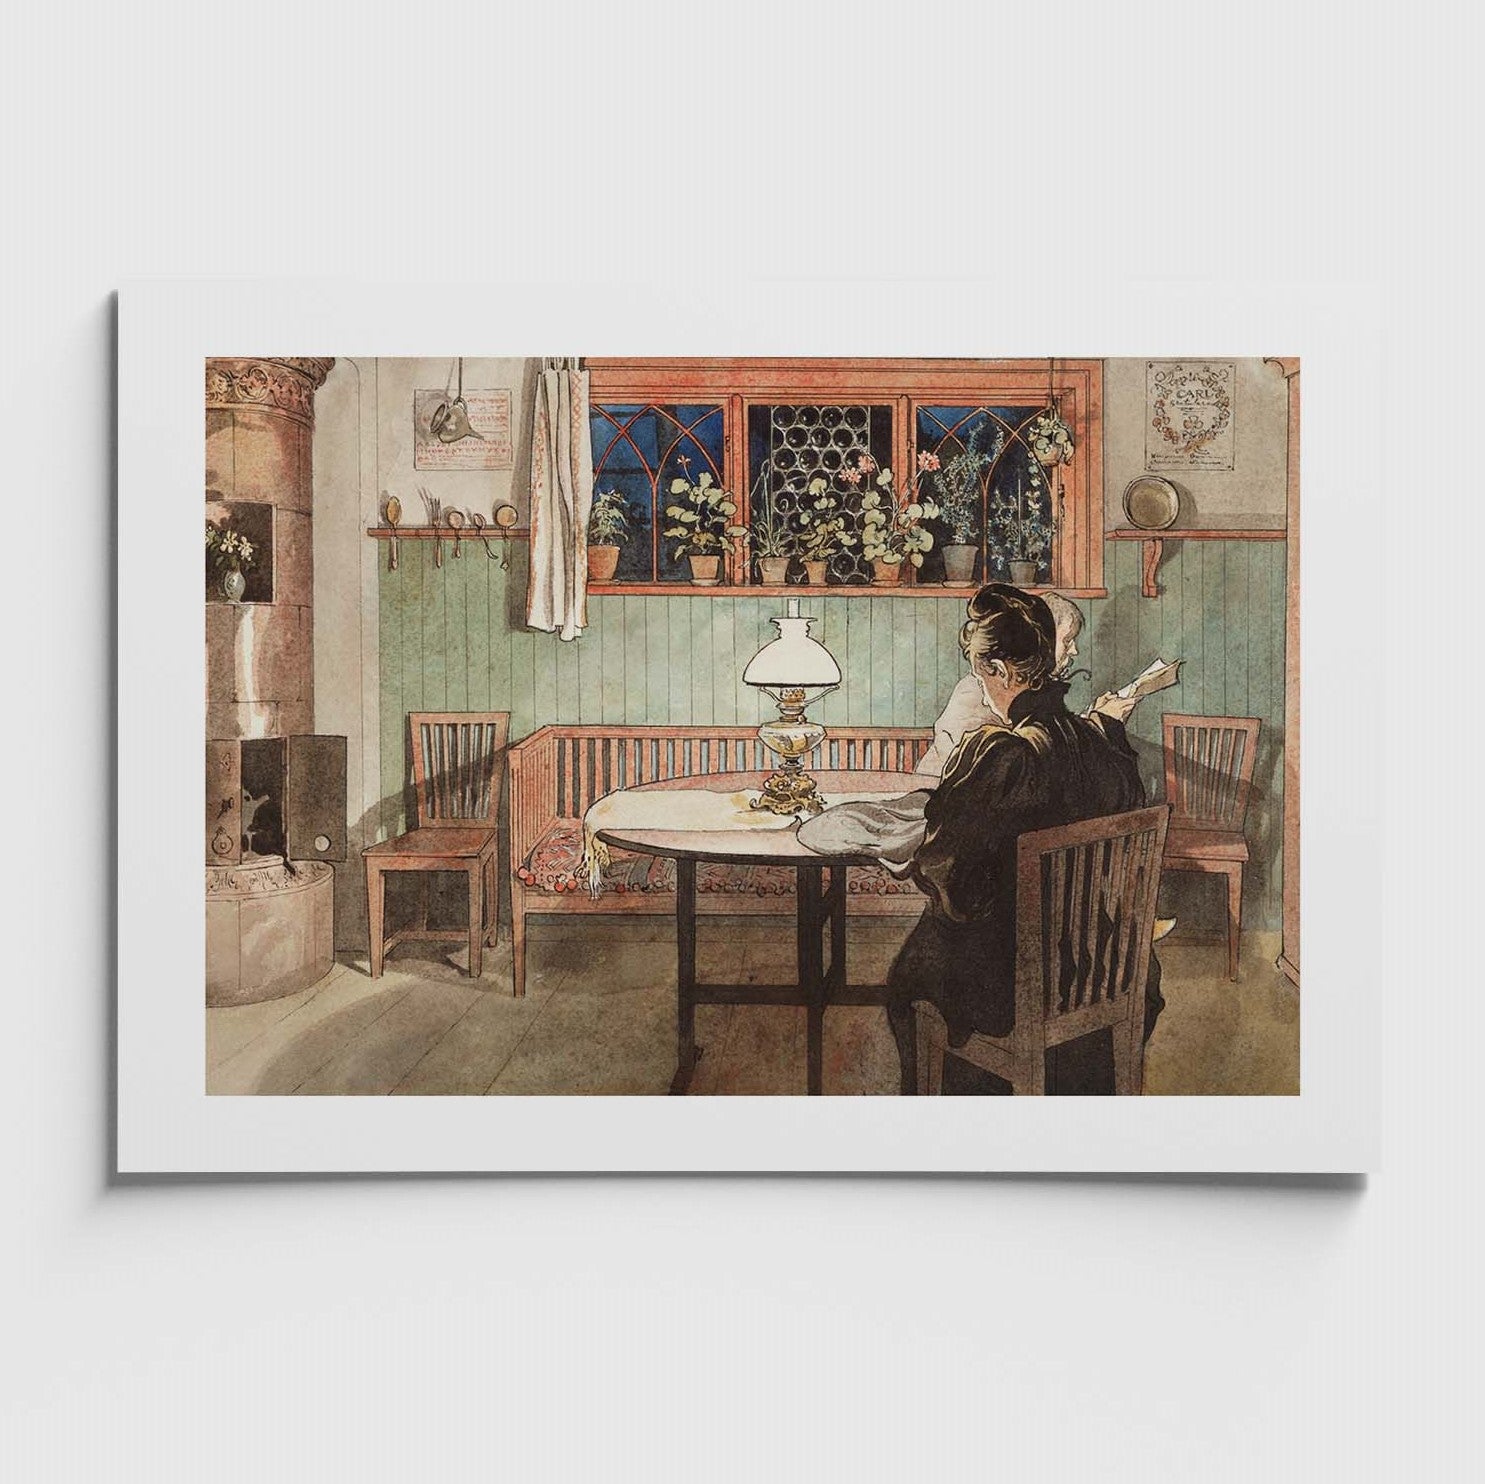 Liten Poster med Carl Larssons målning När barnen lagt sig från samlingen ur ett hem